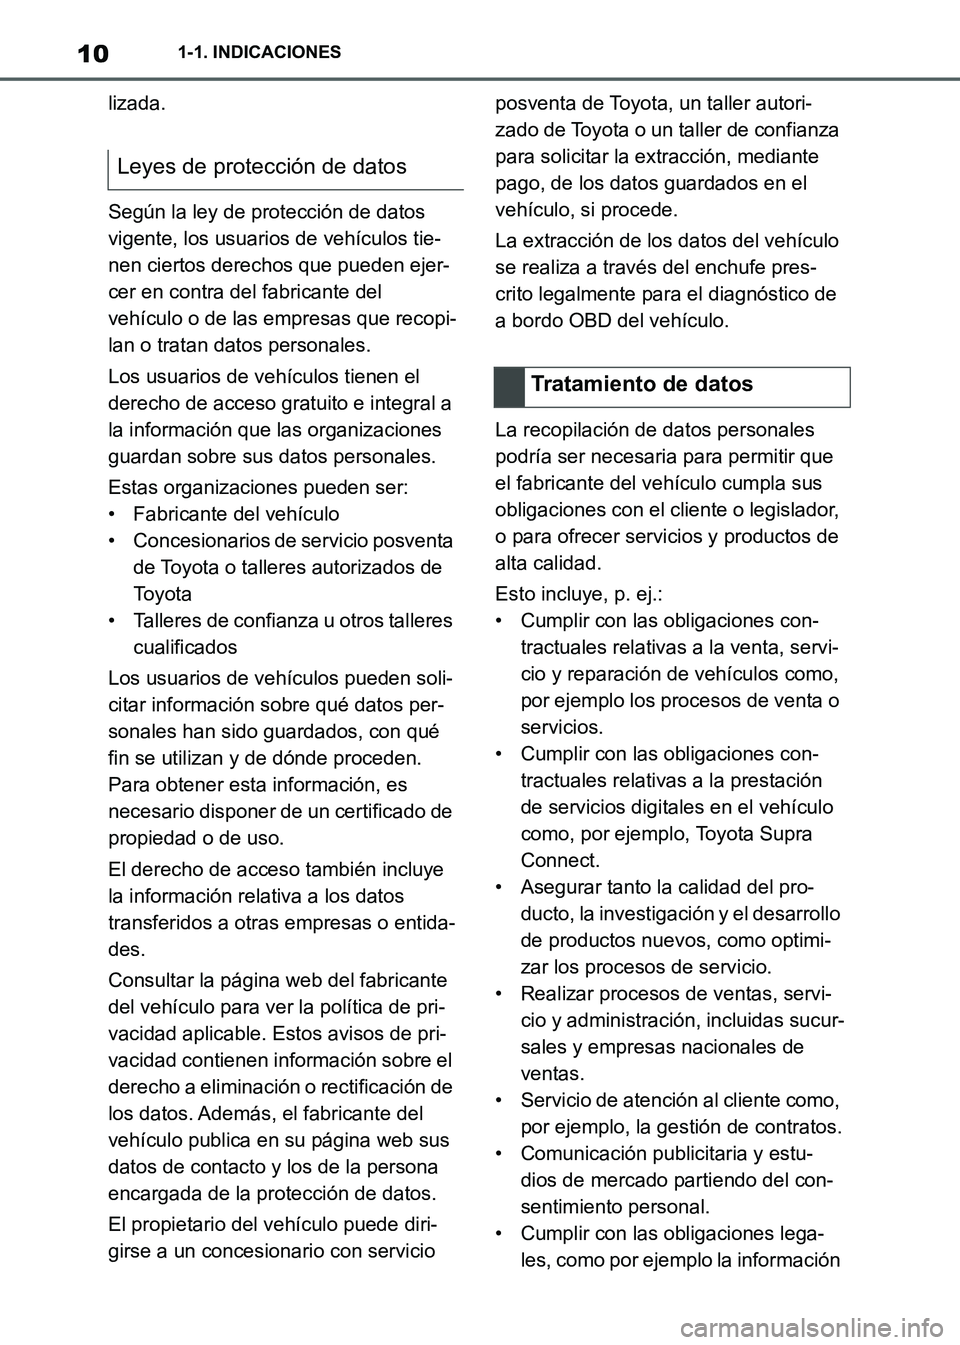 TOYOTA SUPRA 2021  Manuale de Empleo (in Spanish) 101-1. INDICACIONES
Supra Owners Manual_S (from Nov. 20 Prod.)lizada.
Según la ley de protección de datos 
vigente, los usuarios de vehículos tie-
nen ciertos derechos que pueden ejer-
cer en con